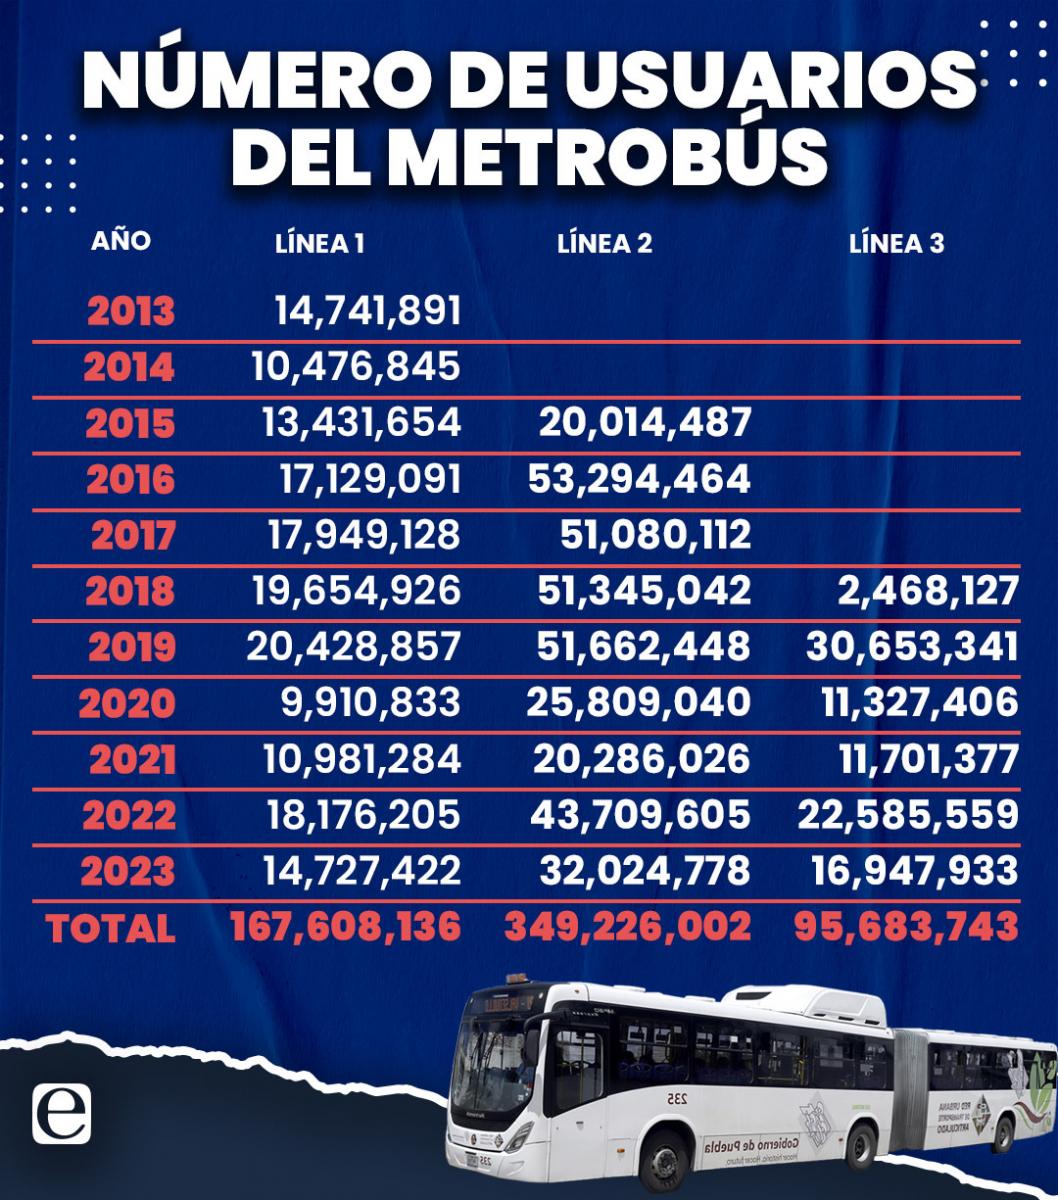 numero_de_usuarios_del_metrobus_por_linea_desde_su_apertura_en_2013.jpg